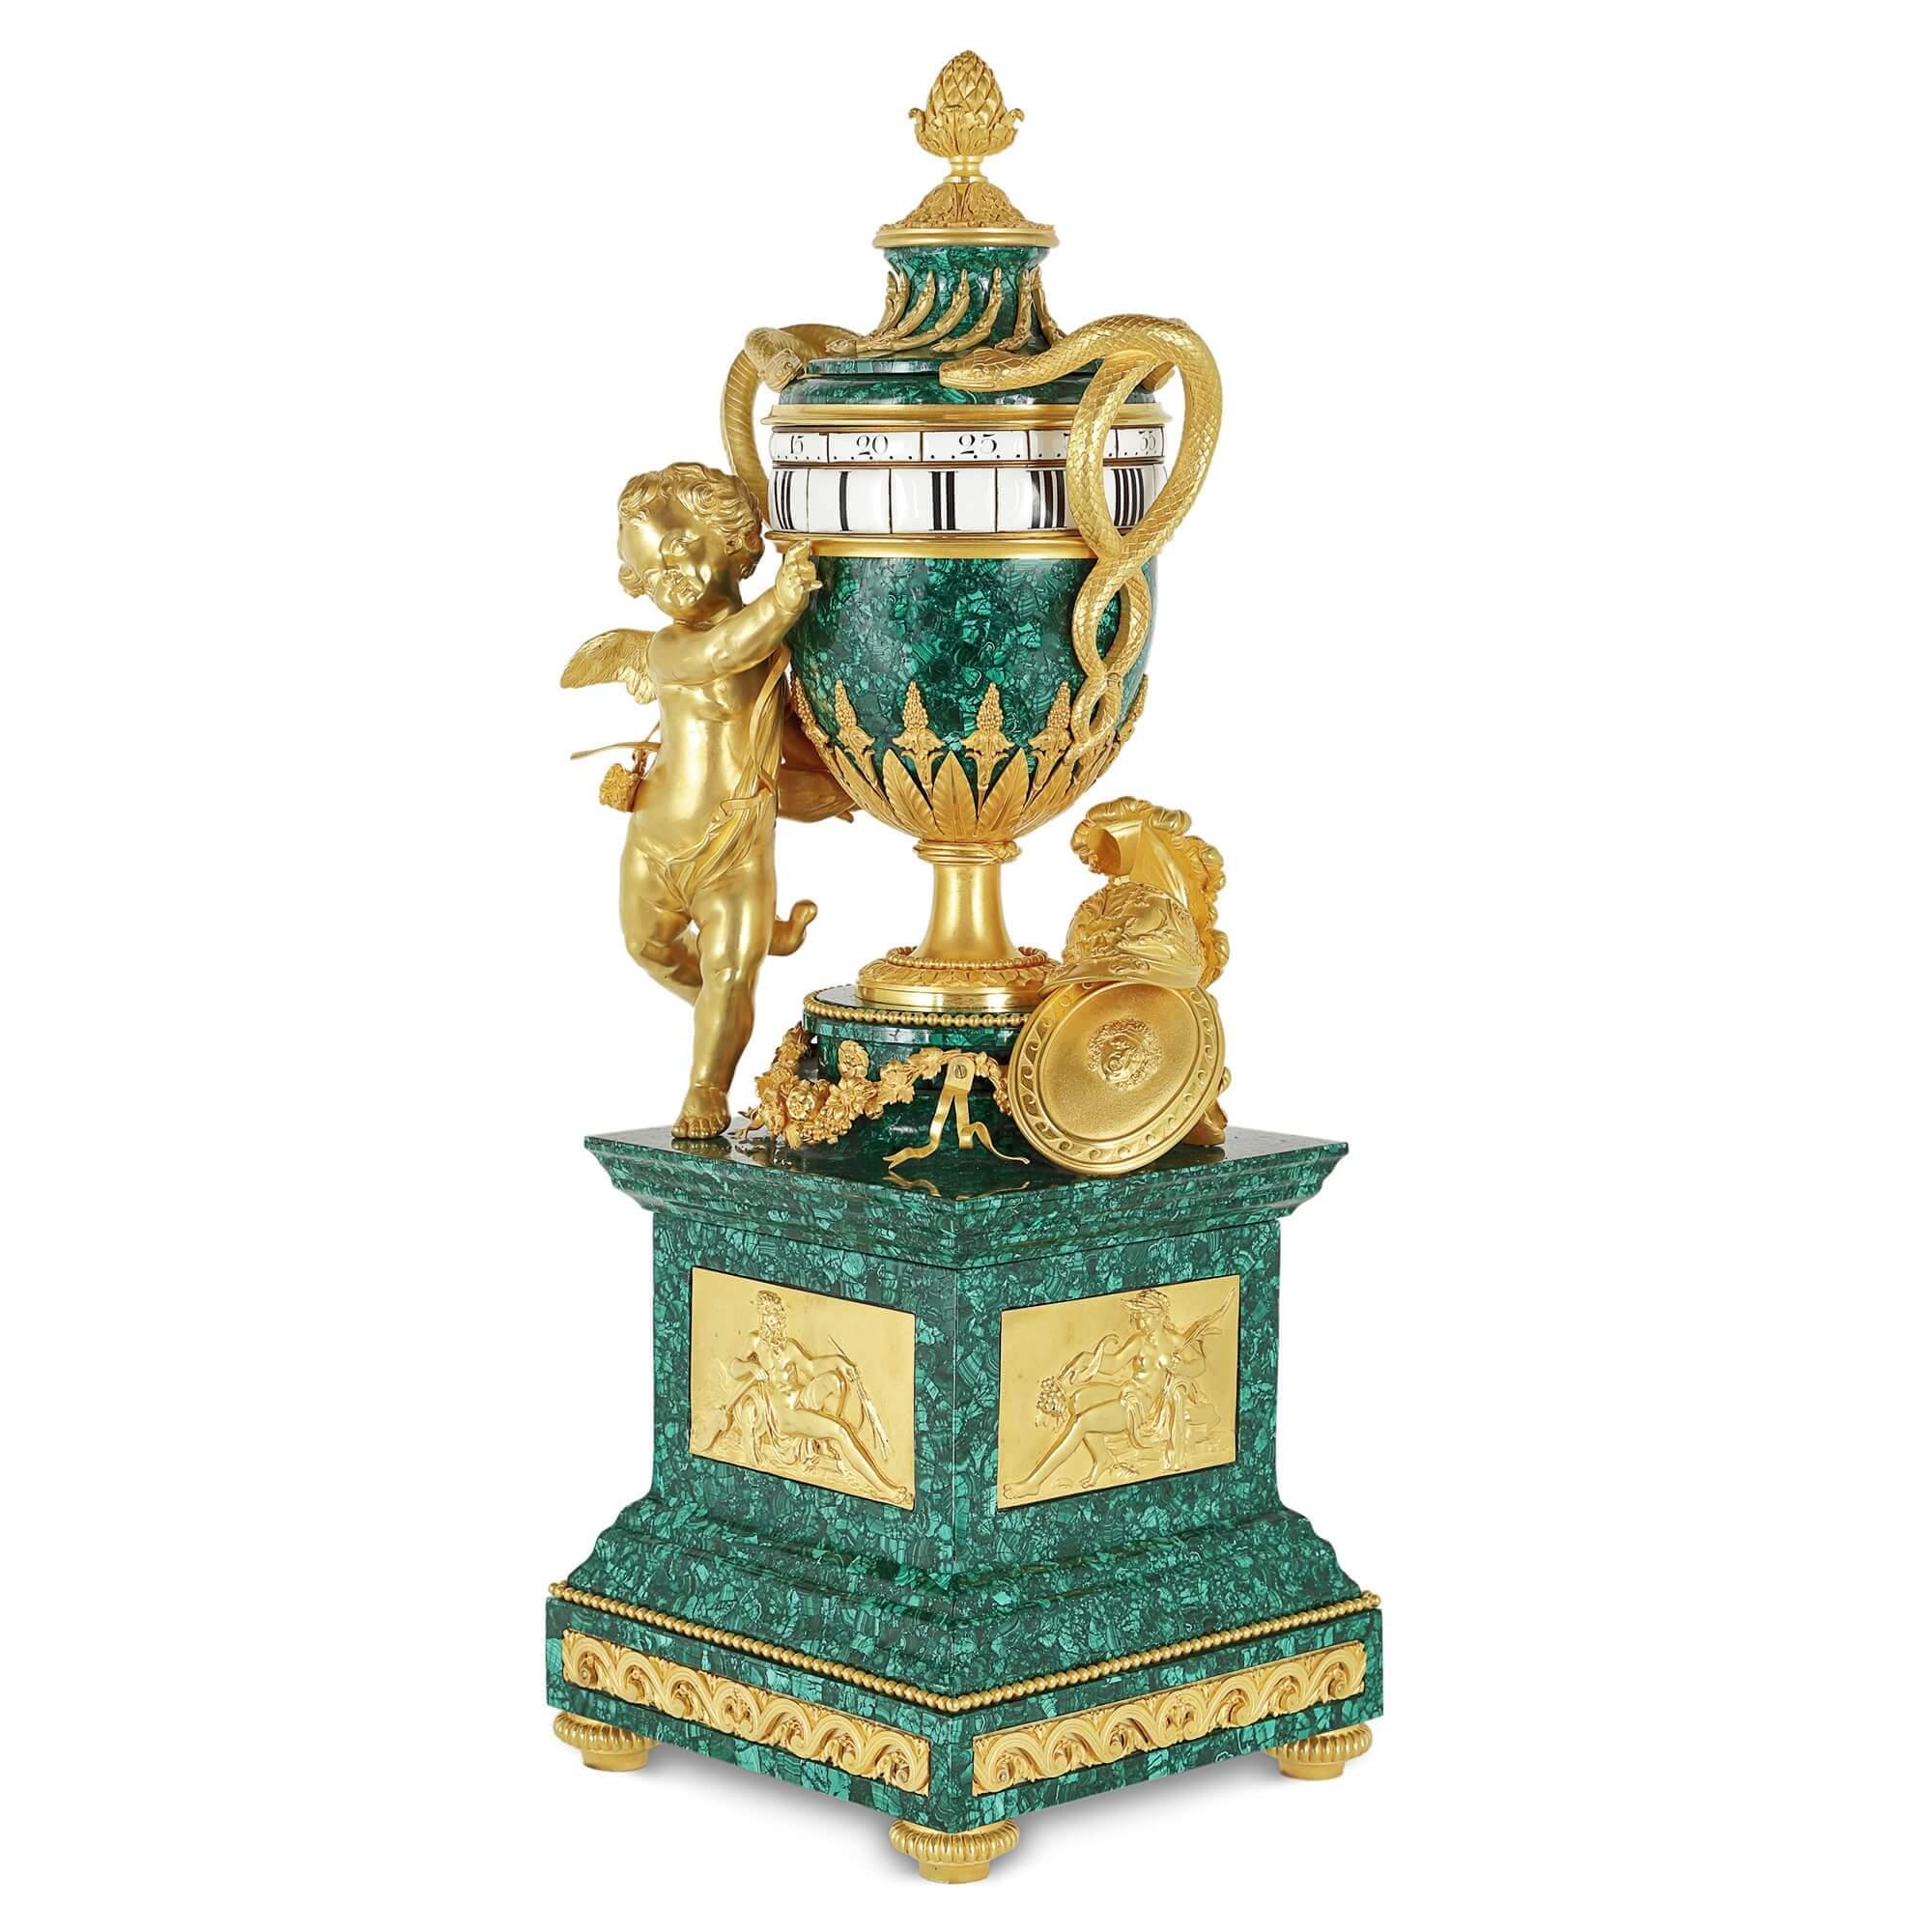 Pendule de cheminée ancienne française en bronze doré avec malachite tournante
Français, fin du XIXe siècle
Mesures : Hauteur 75 cm, largeur 28 cm, profondeur 25,5 cm

Le boîtier de l'horloge de cheminée en malachite ressemble à un vase amphore